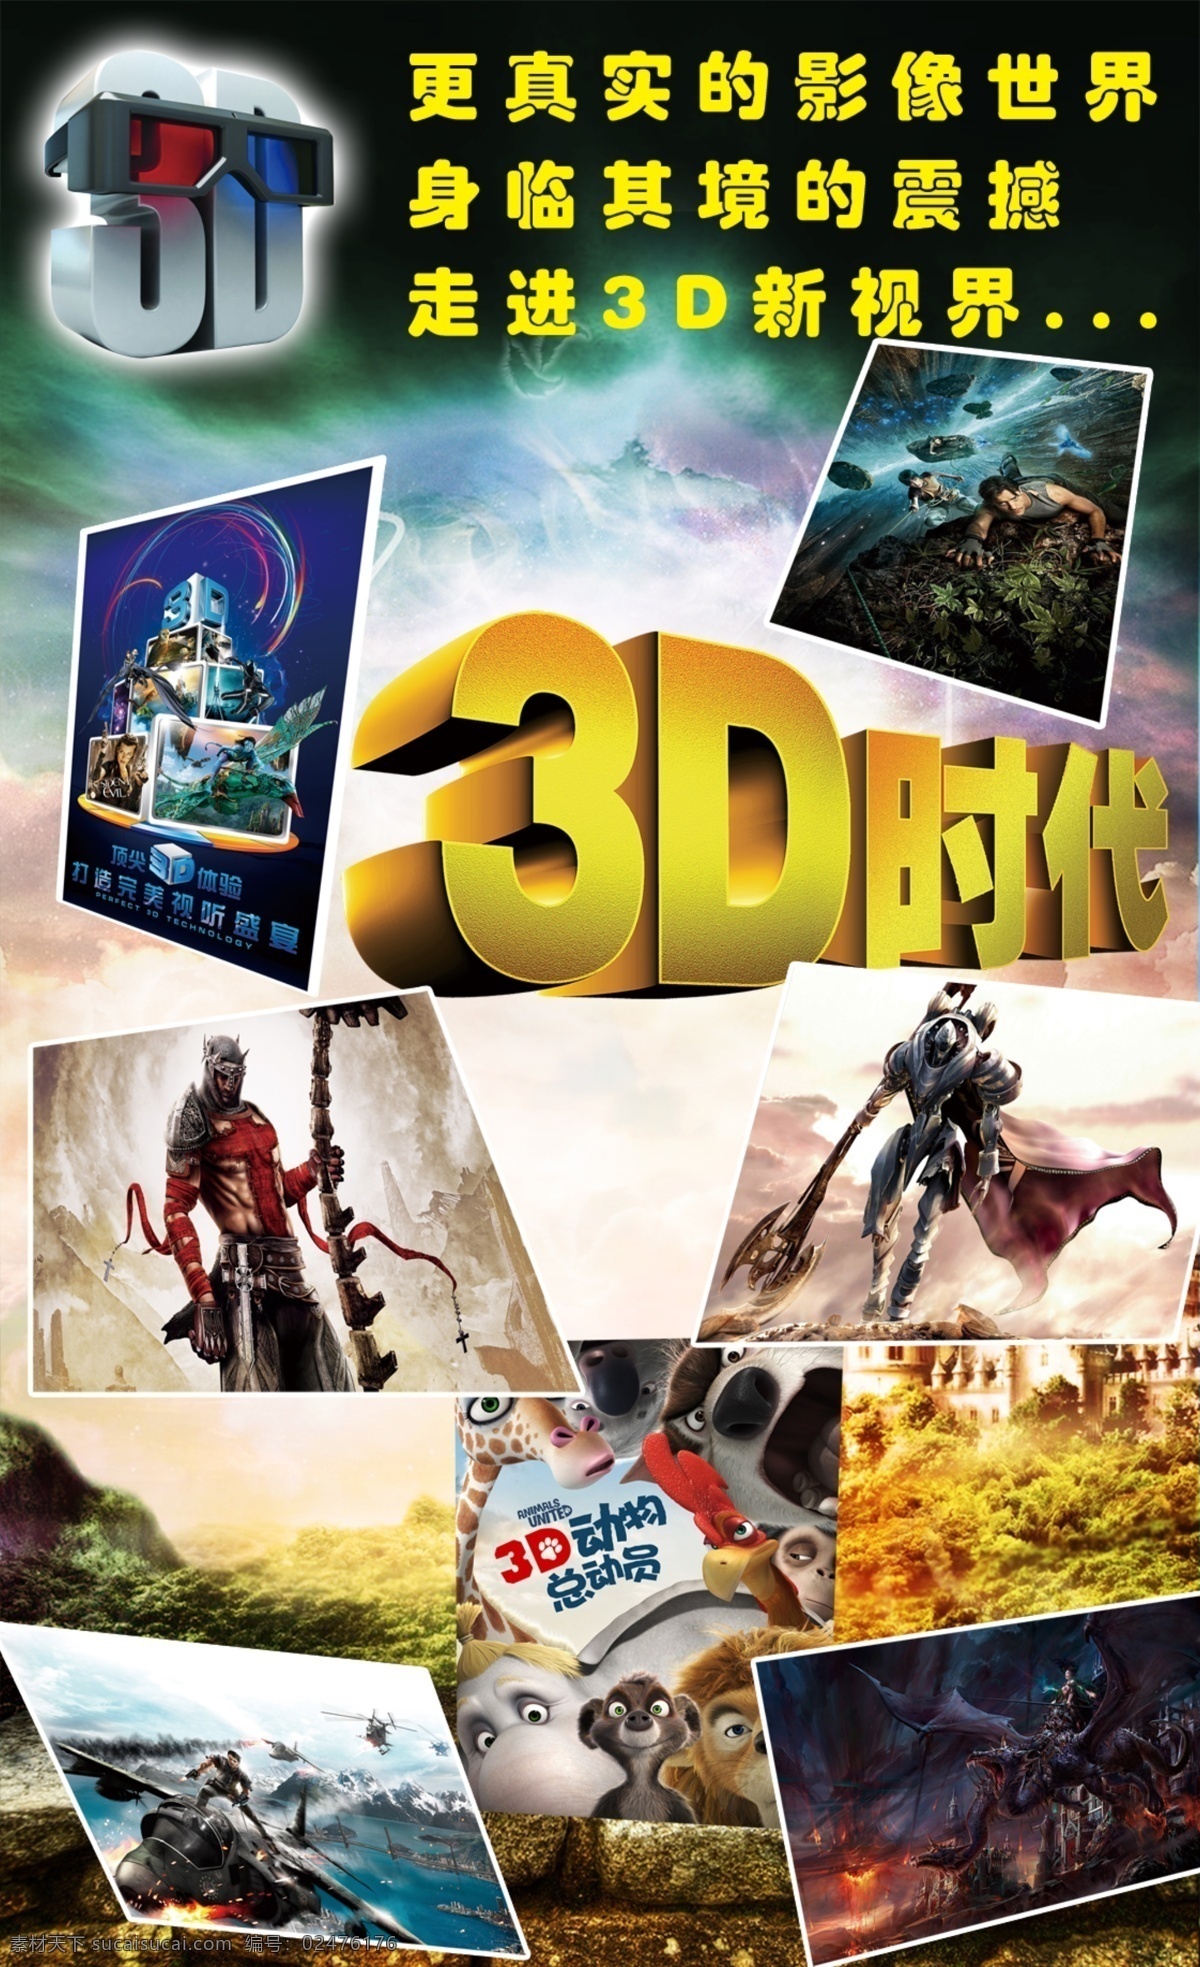 电影海报设计 3d海报设计 3d海报宣传 电影 电影宣传 震撼 3d电影宣传 广告设计模板 源文件